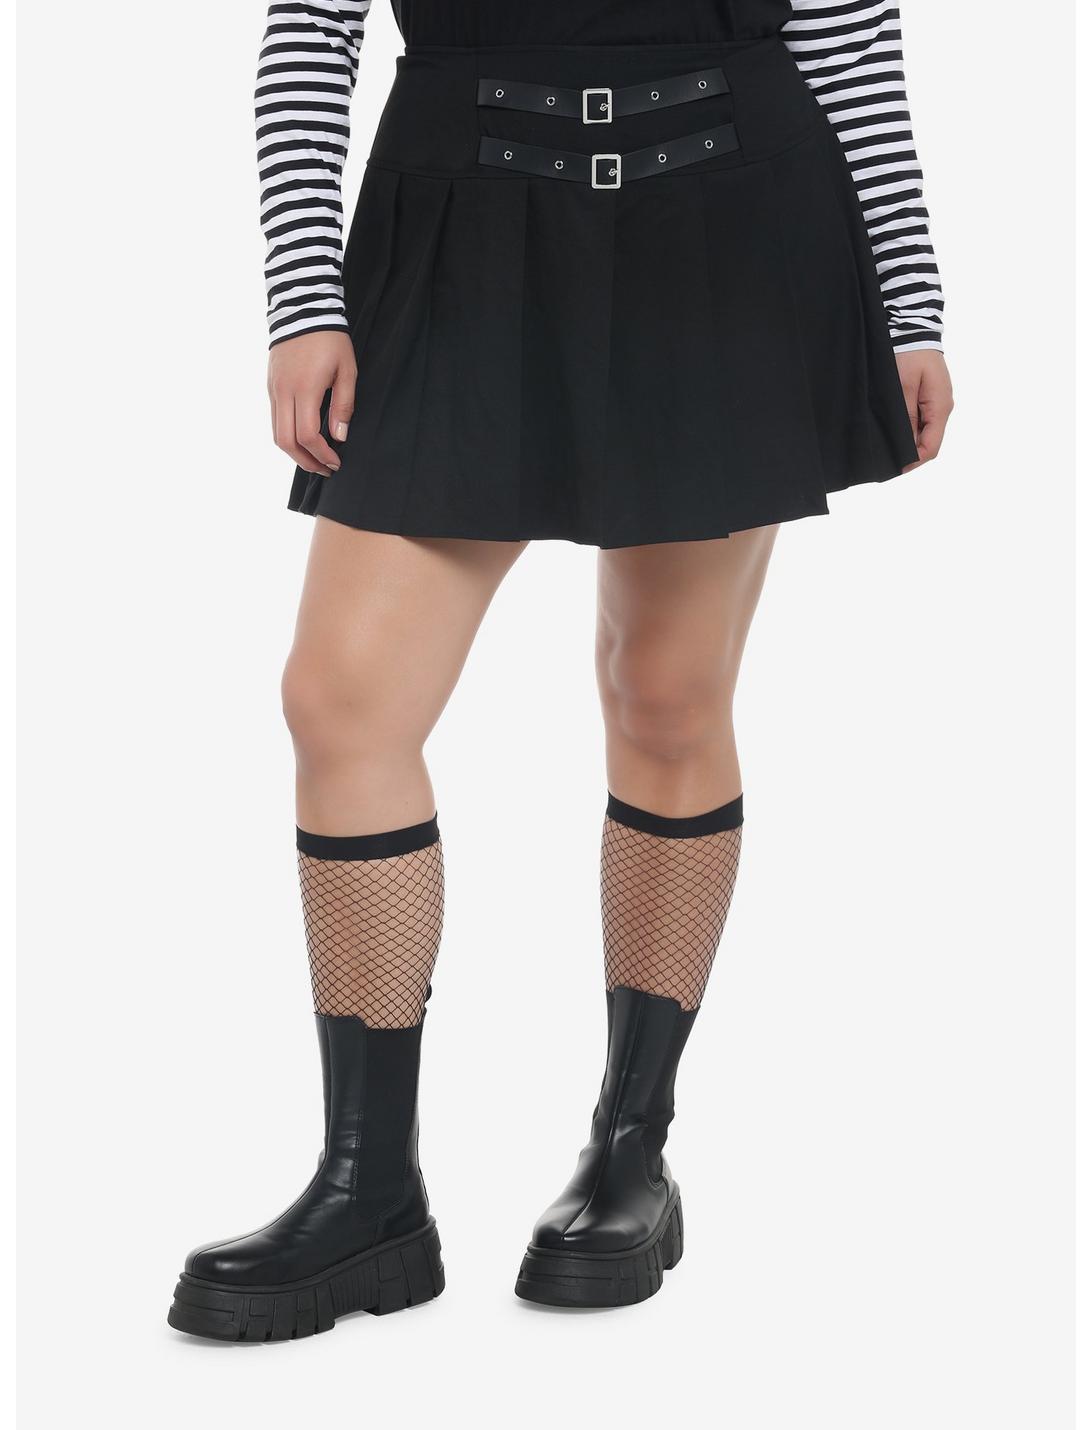 Black Buckle Waist Pleated Skirt Plus Size, BLACK, hi-res